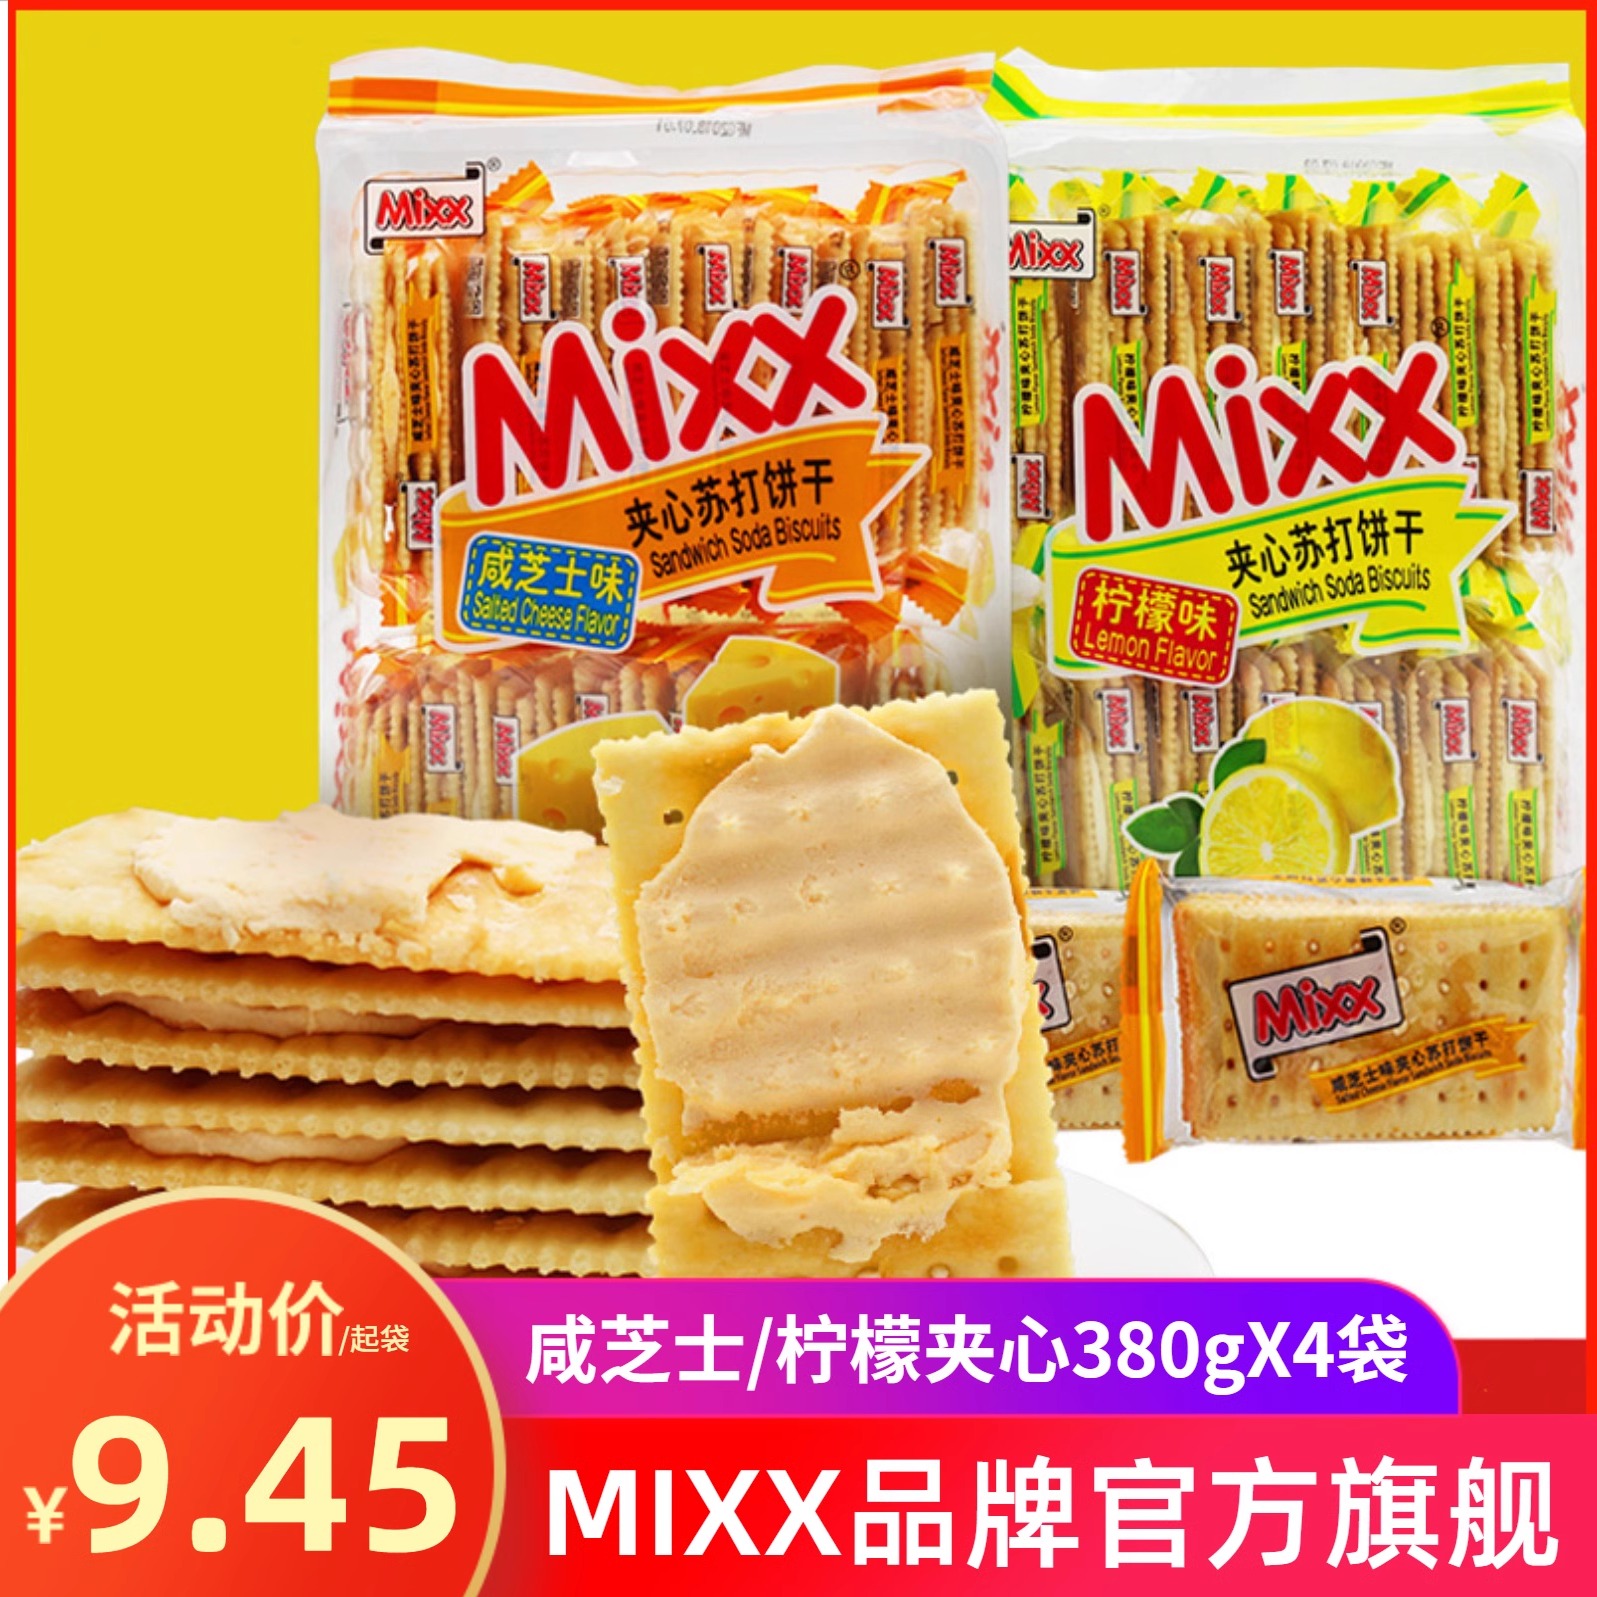 MIXX柠檬苏打夹心饼干380g咸芝士味夹心饼干零食品批发梳打饼干